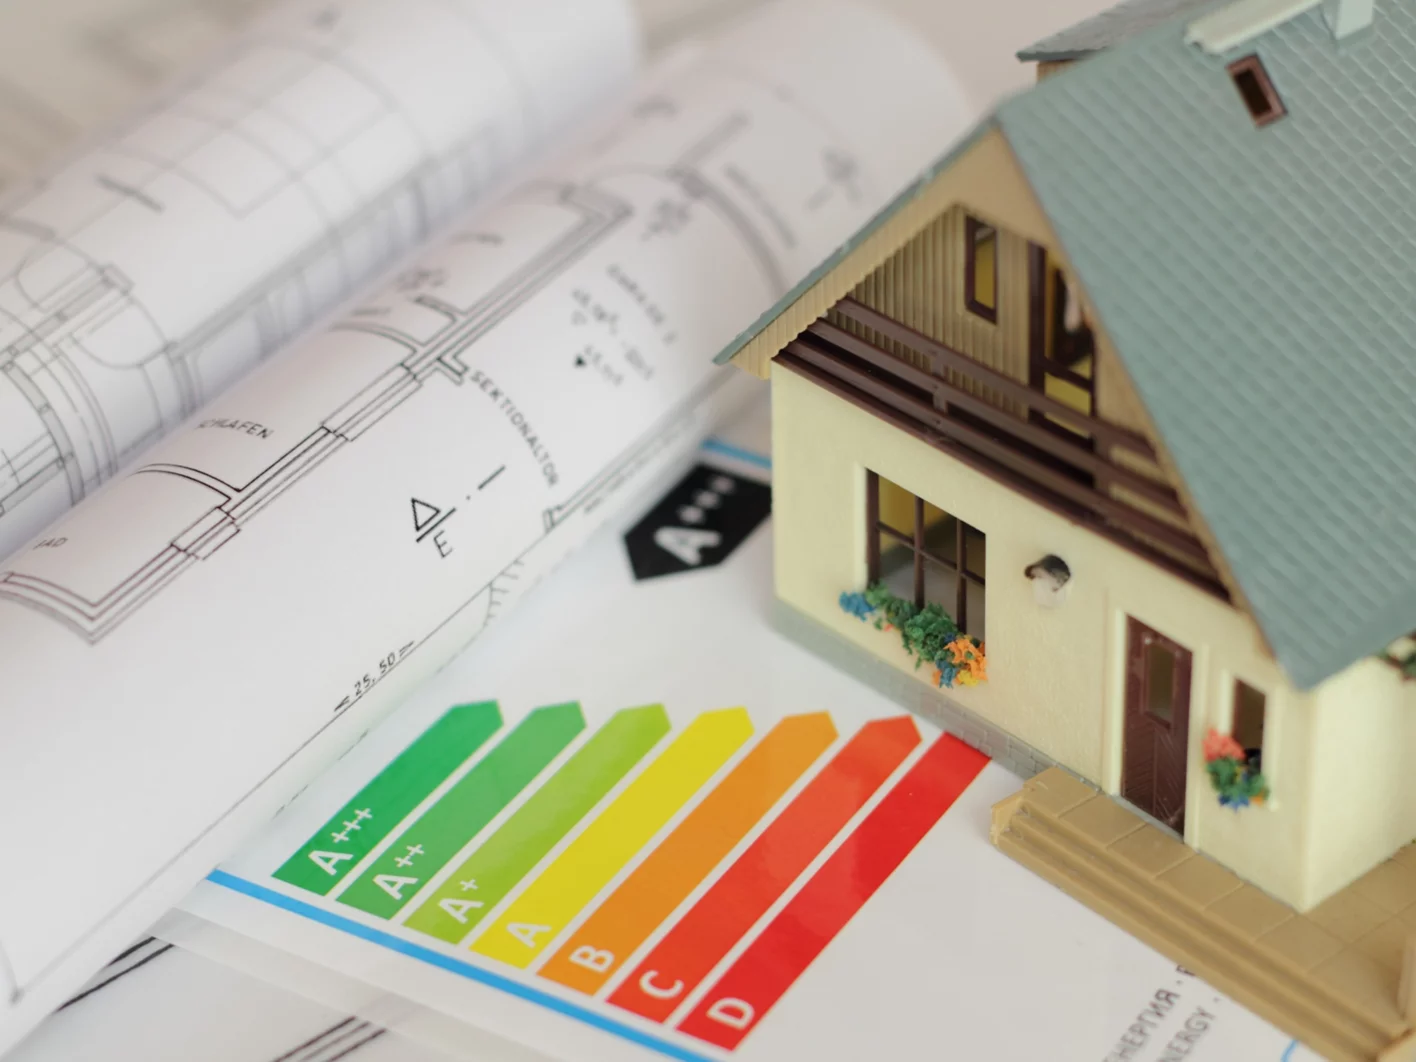 Energieffektivitetsvurdering for huse